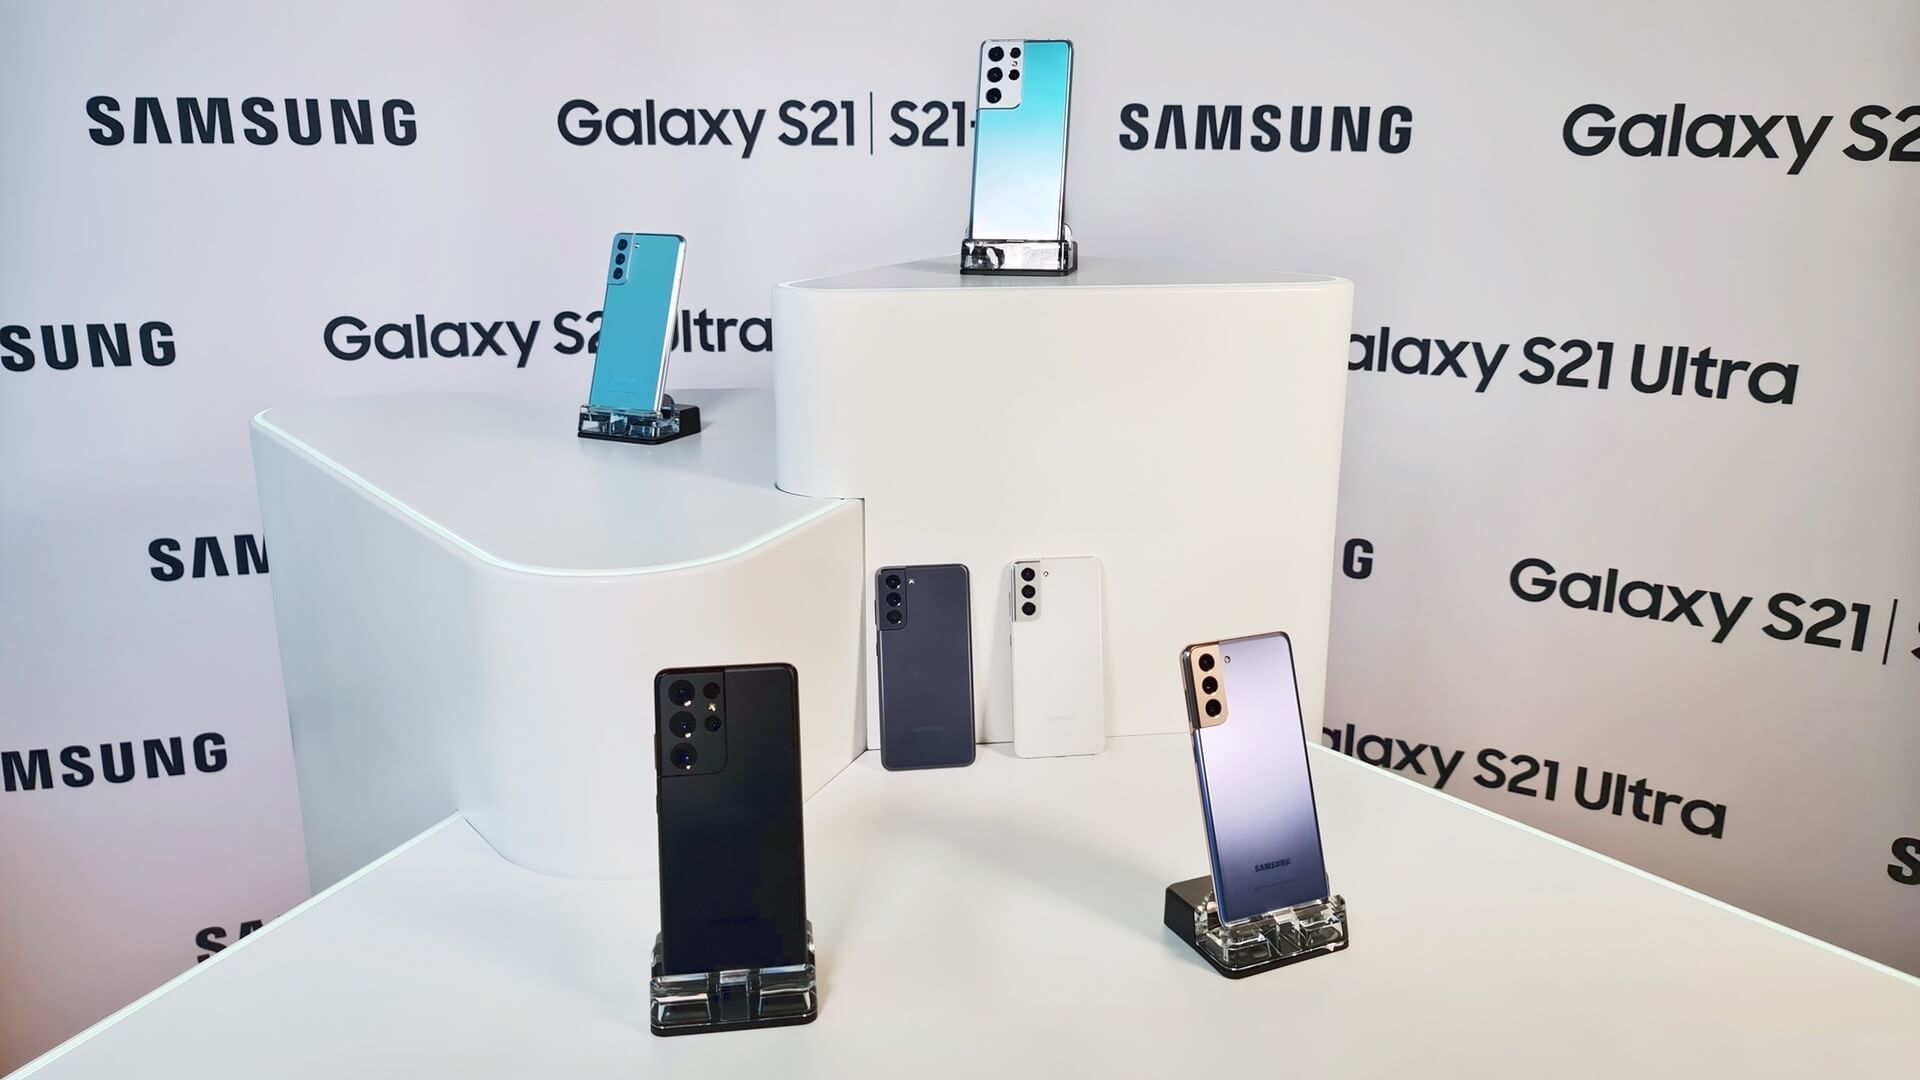 Устройства Samsung будут получать обновления безопасности Android в течении 4-х лет